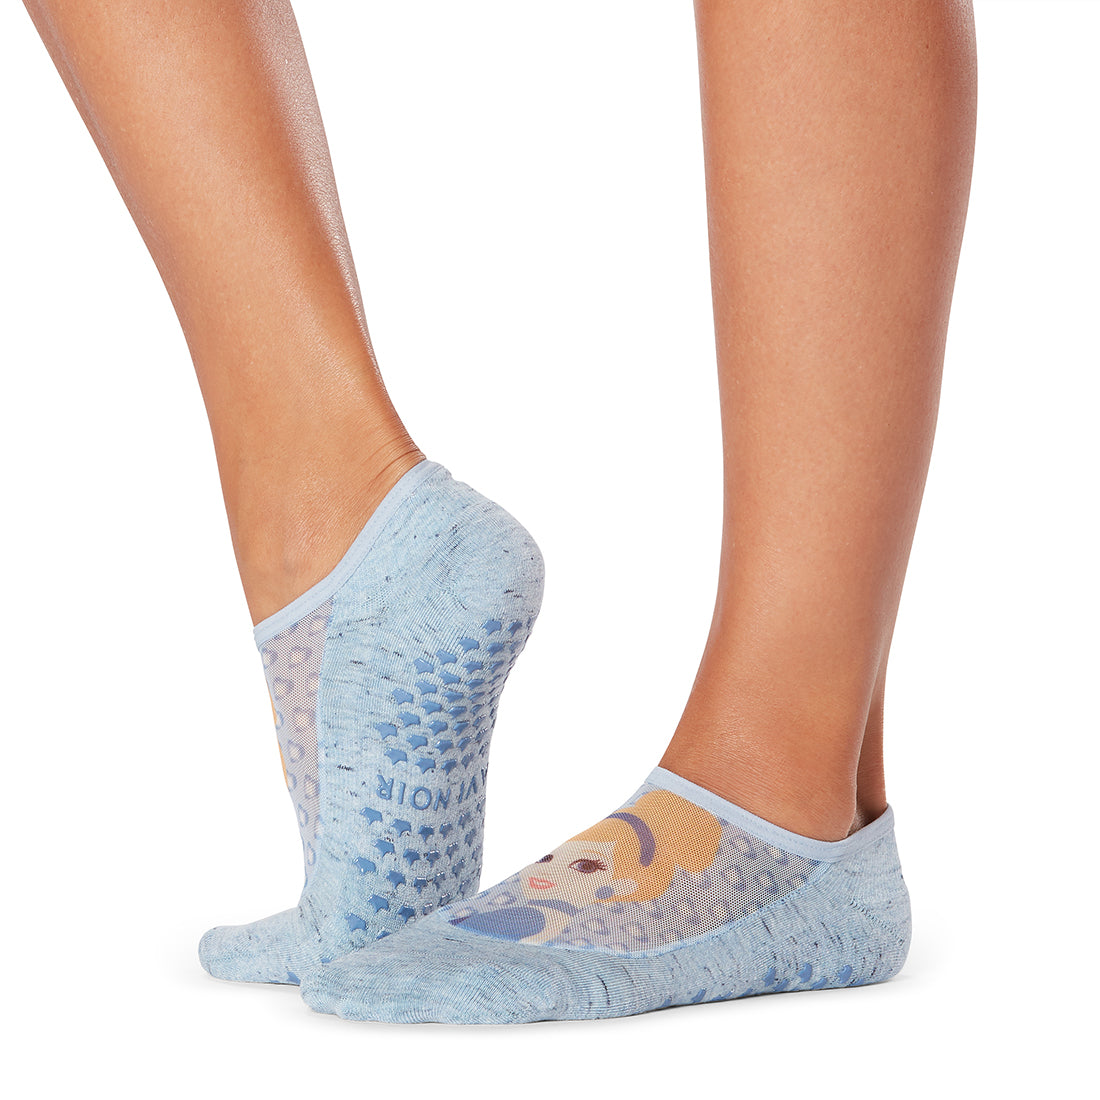 Tavi Maddie Grip Socks at YogaOutlet.com –